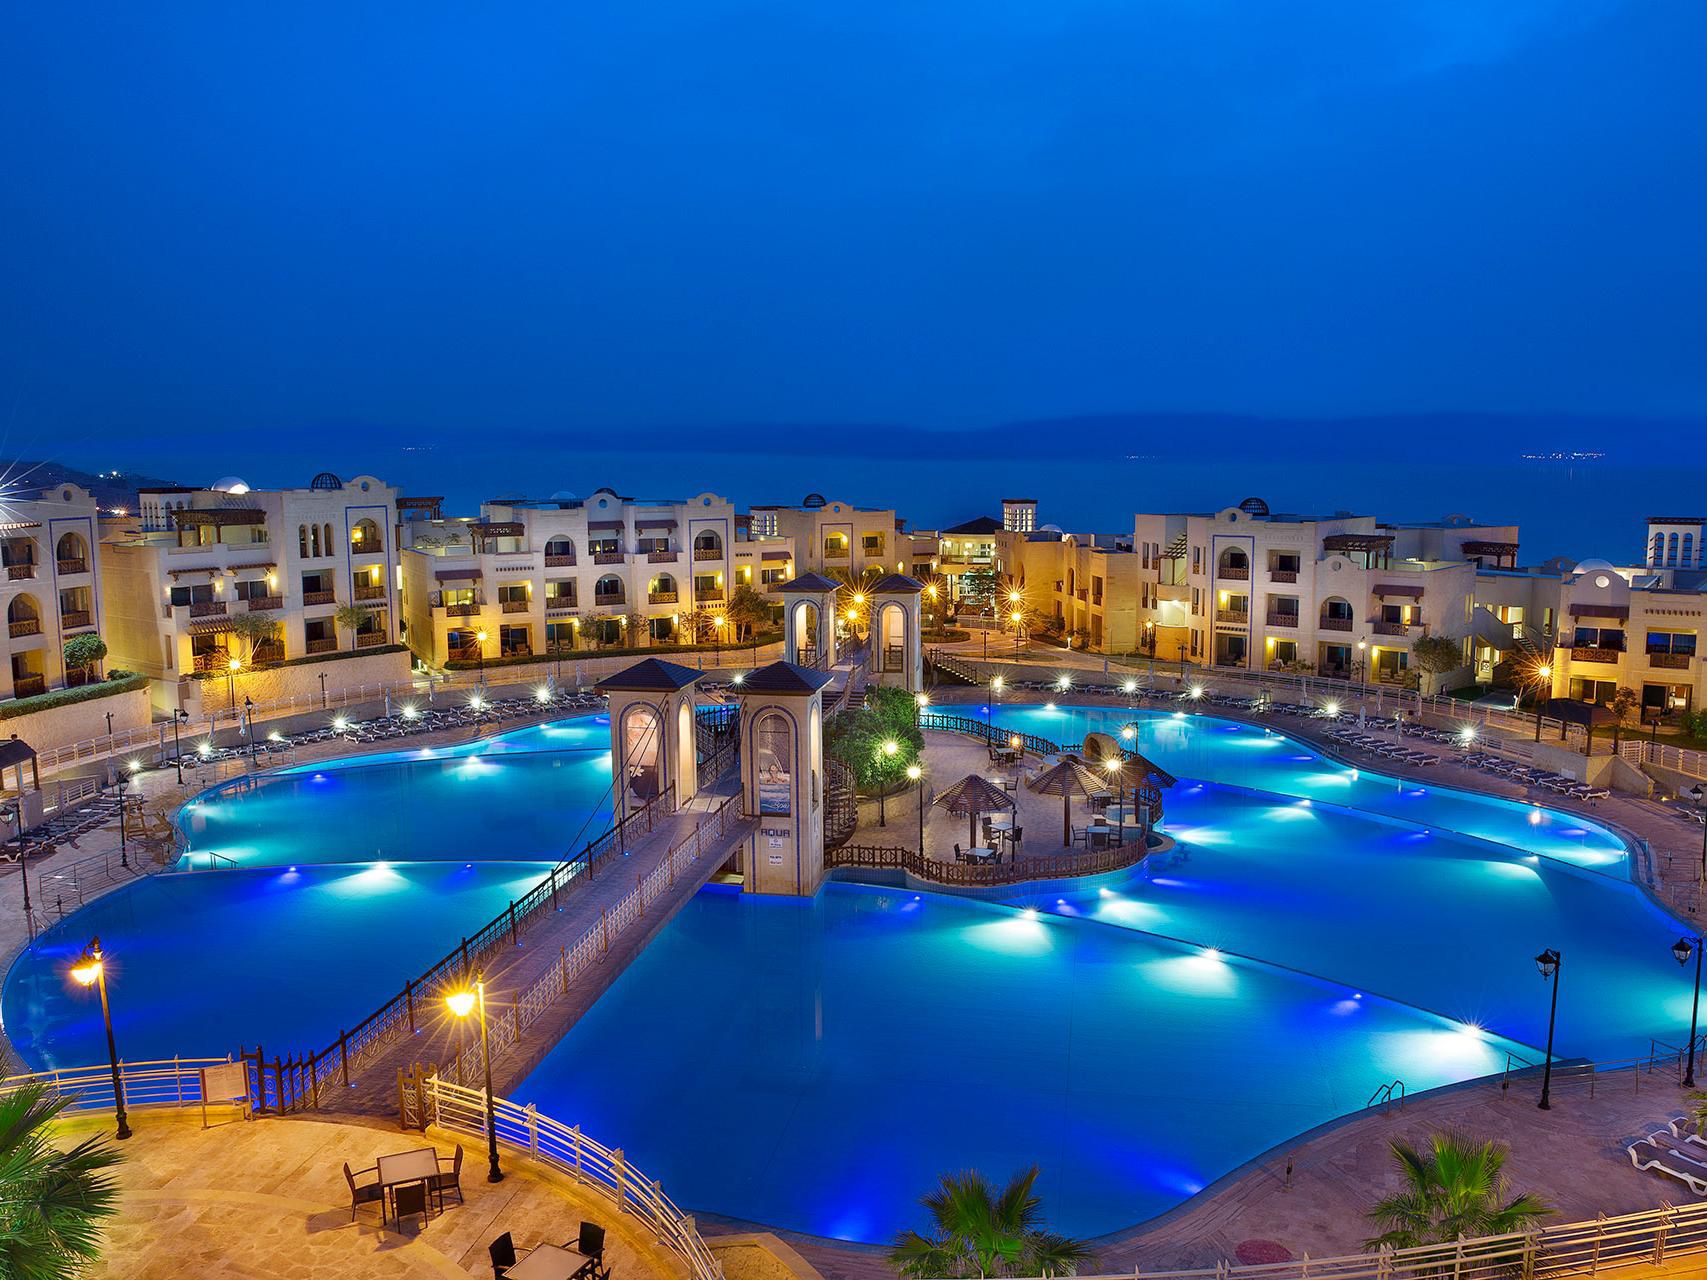 Crowne Plaza Jordan - Dead Sea Resort & Spa - Swemieh, Jordan